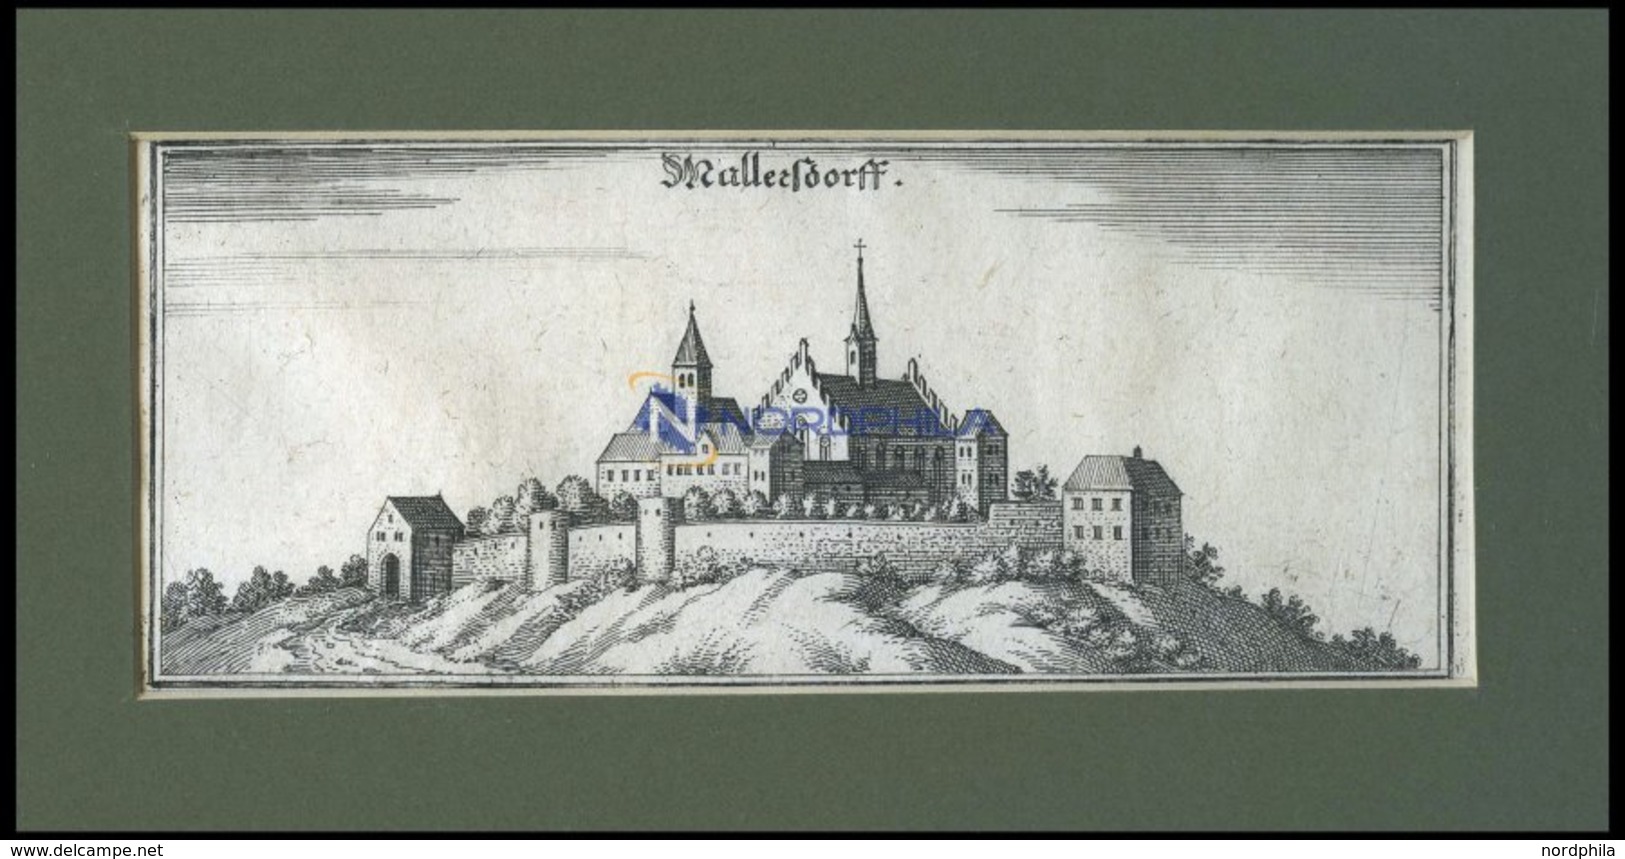 MALLERSDORF: Das Schloß, Kupferstich Von Merian Um 1645 - Lithographien